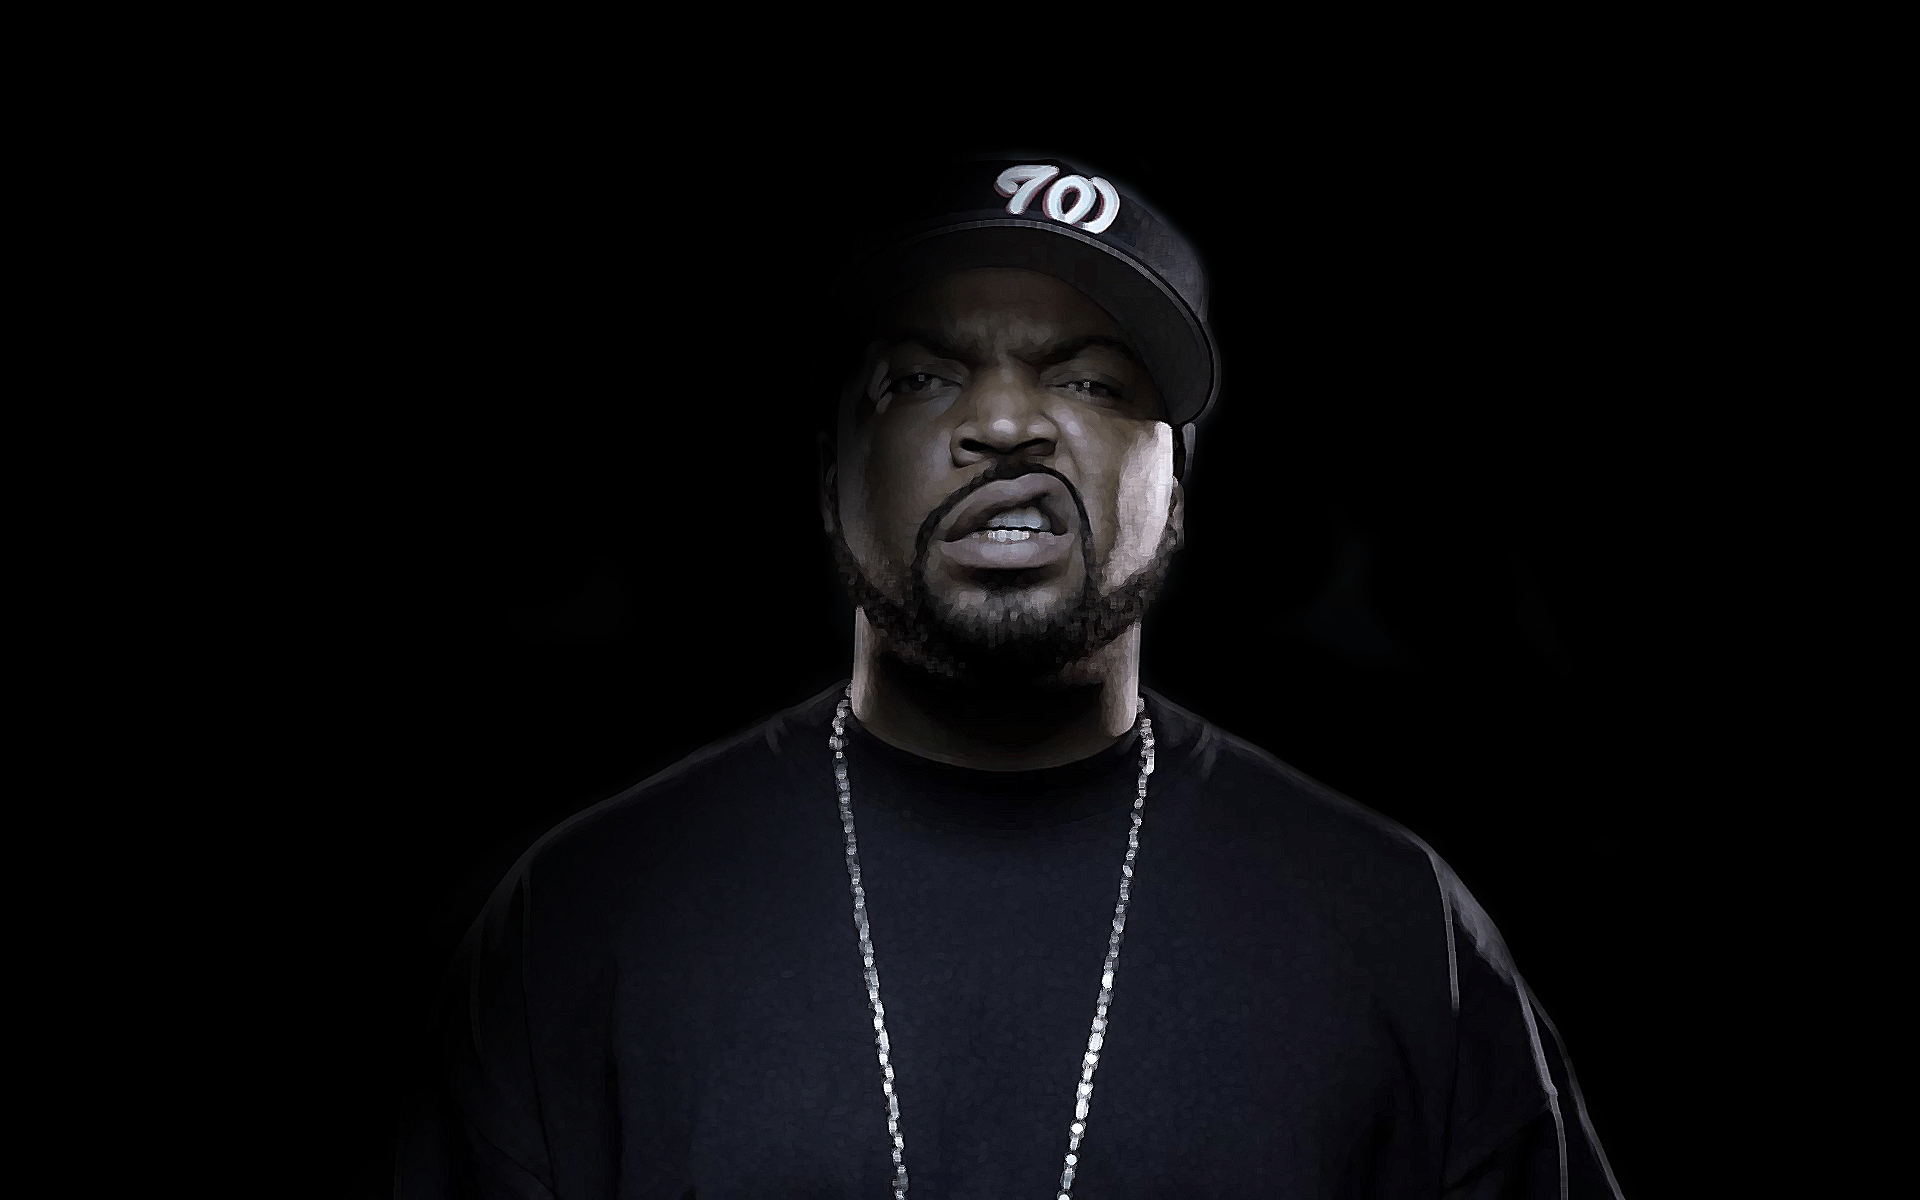 Fondos de pantalla de Ice Cube. Wallpaper de Ice Cube. Fondos